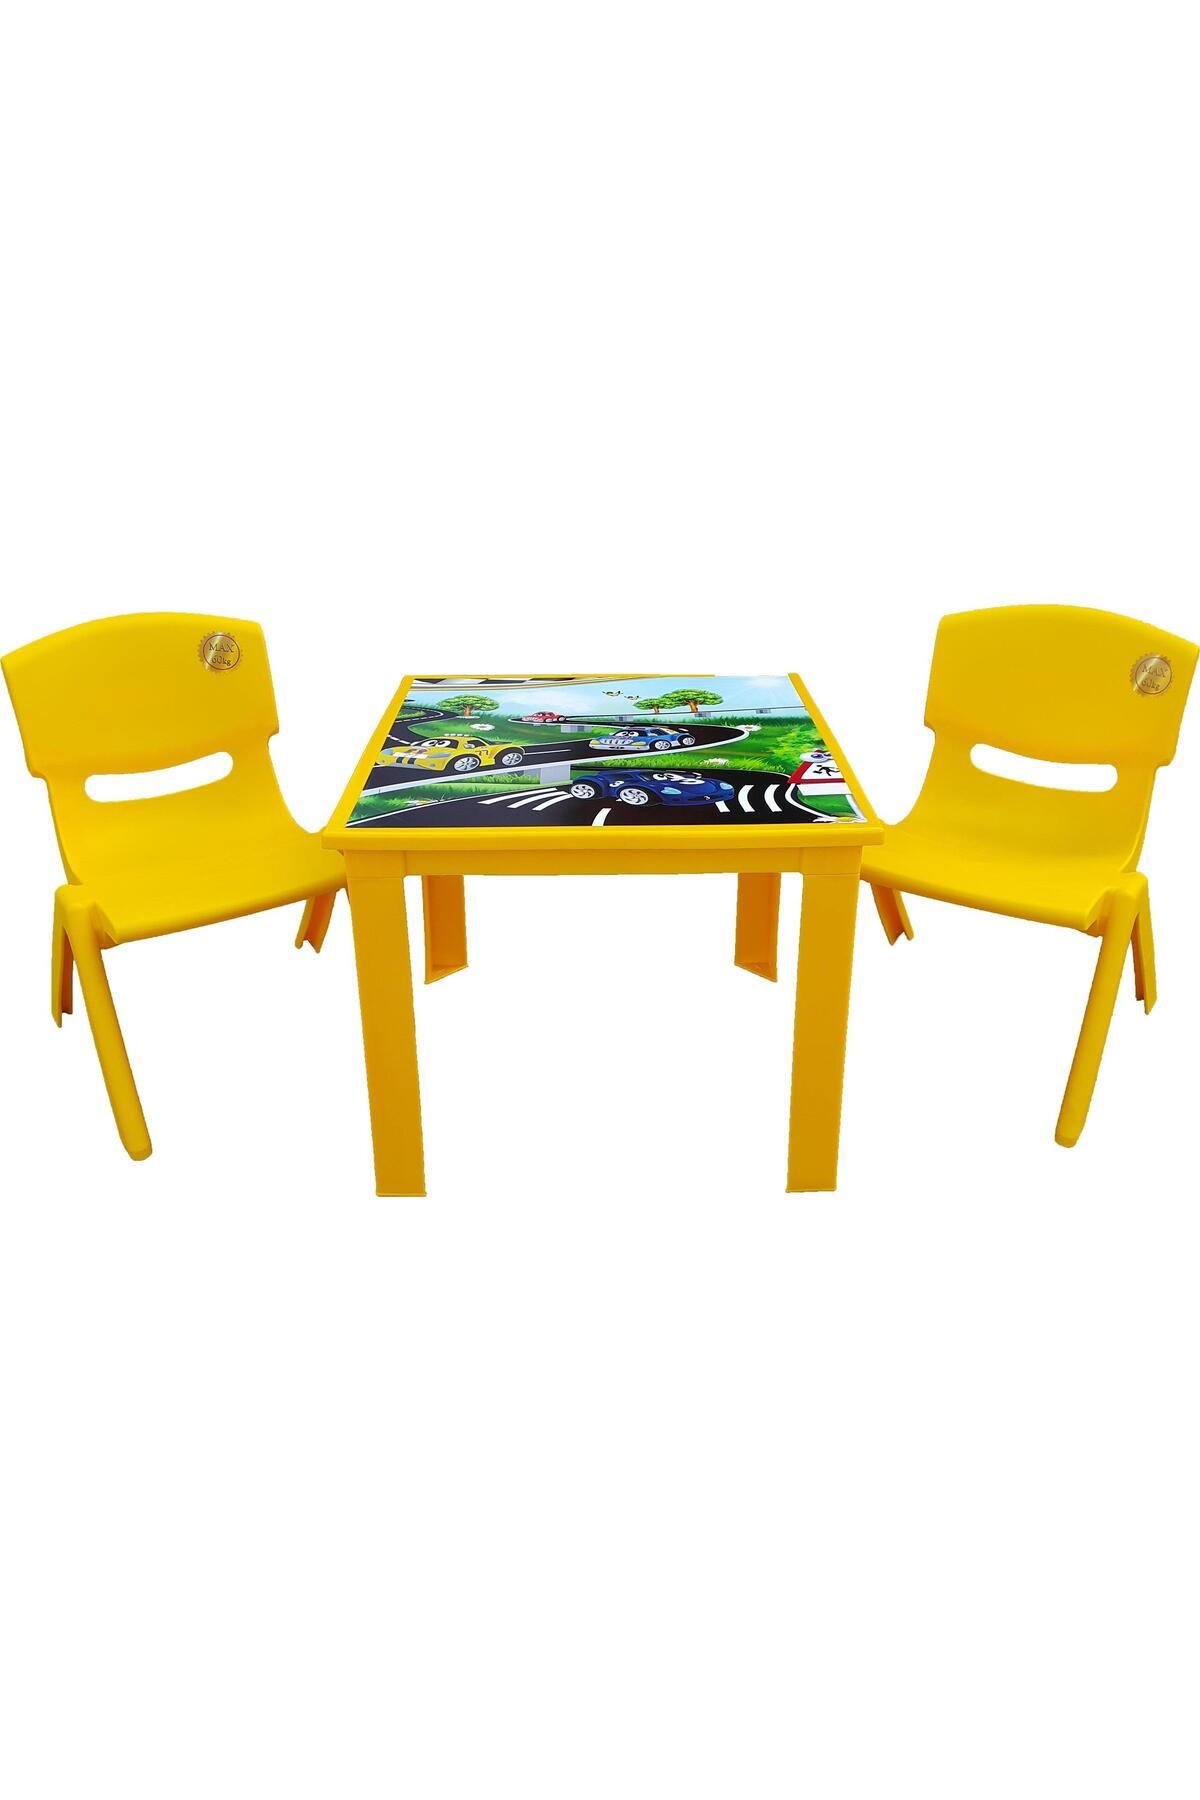 Fiore Çocuk Masa Sandalye Takımı Sarı Araba 2s 1-3 Yaş Için